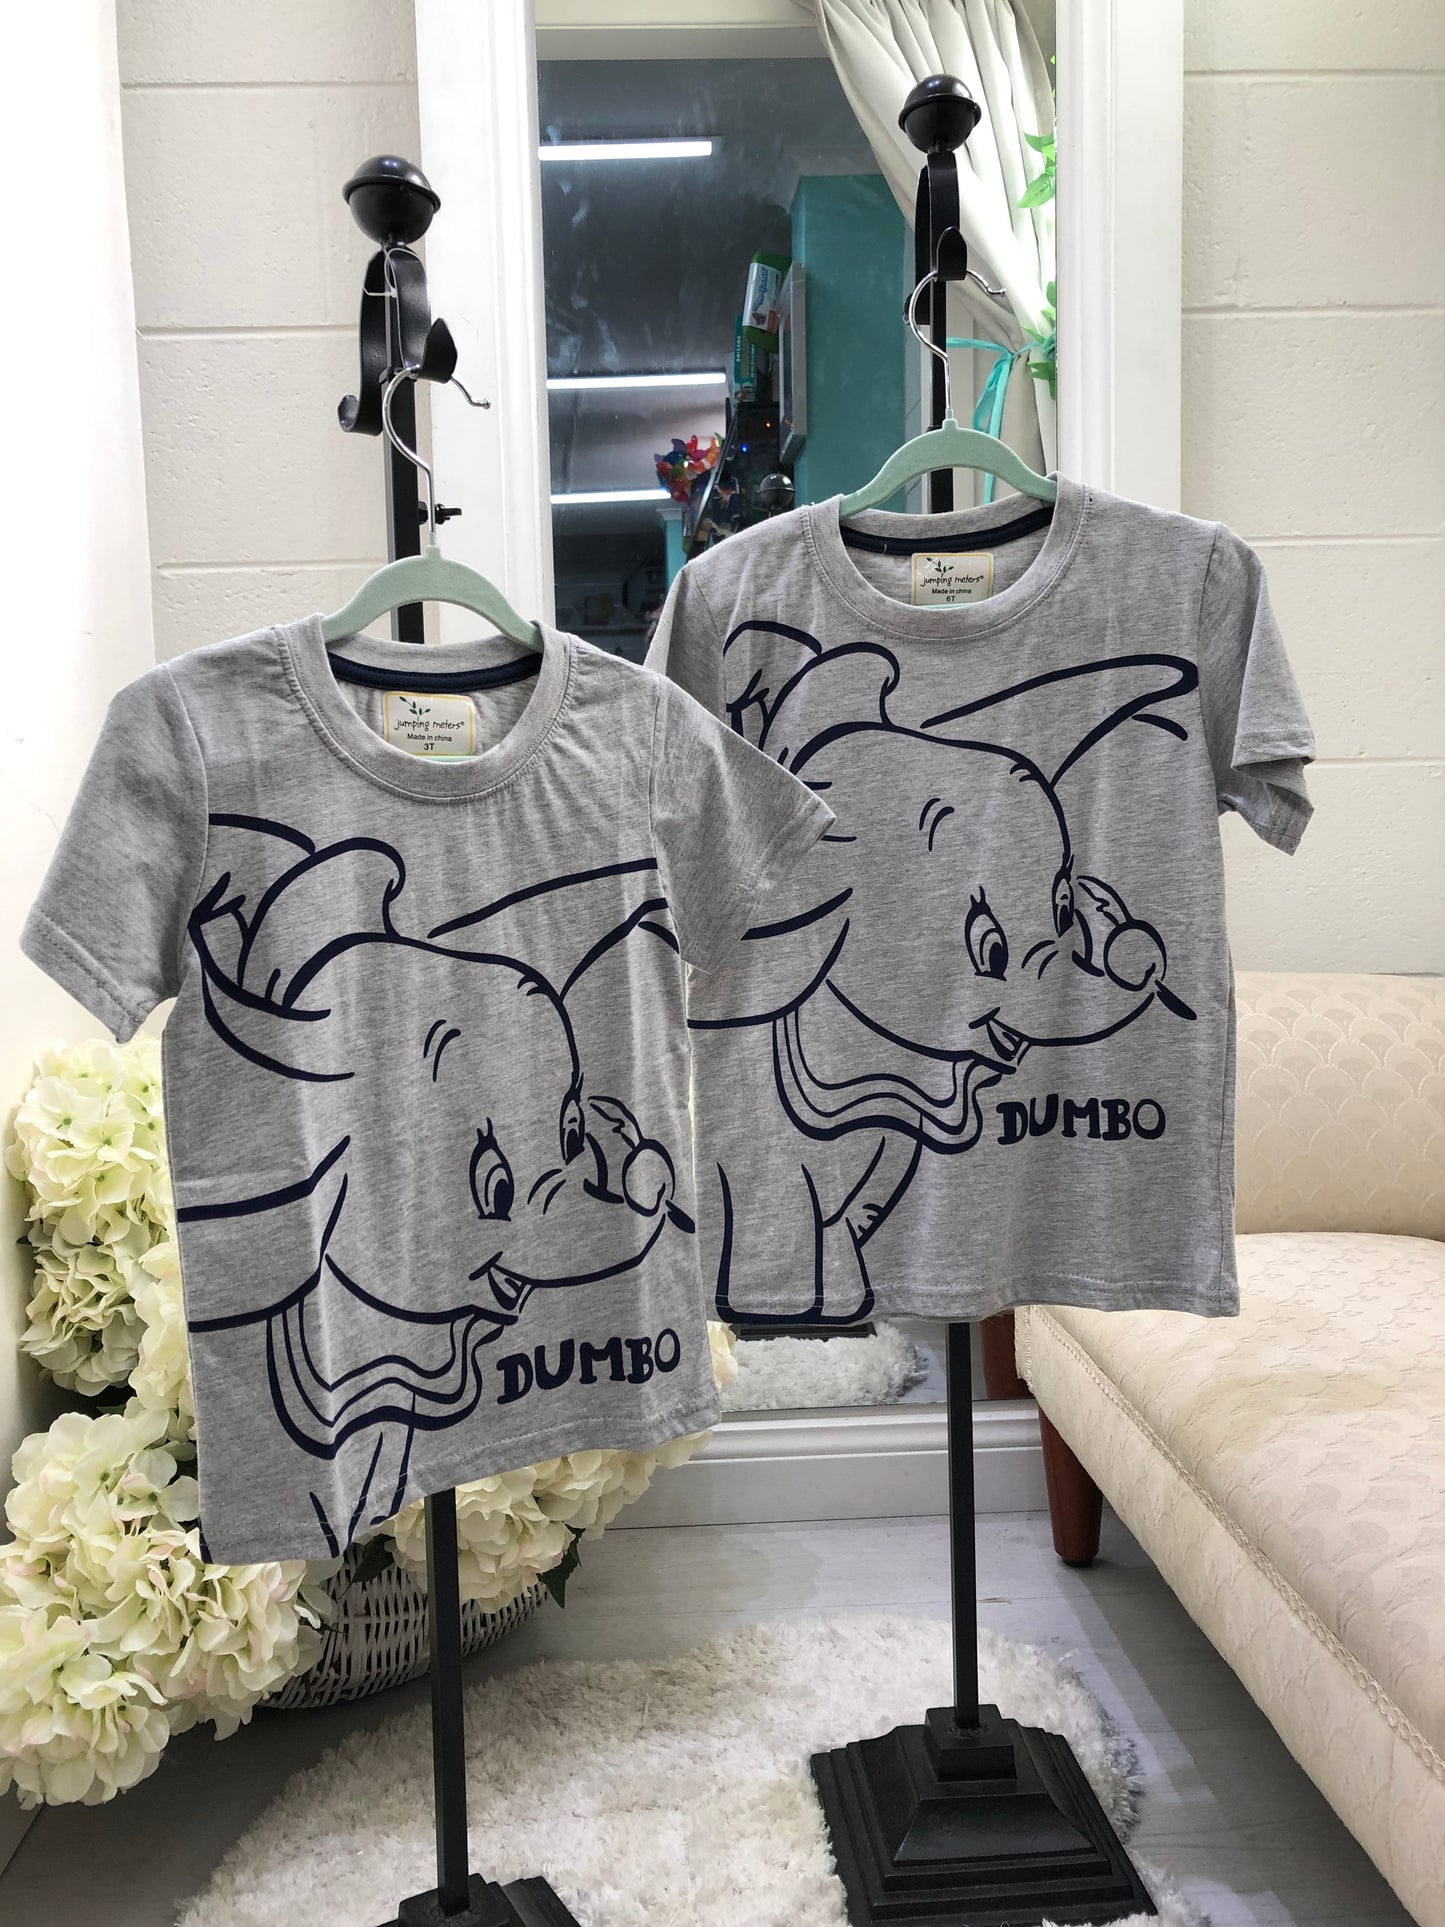 Dumbo Tshirt 6 only!